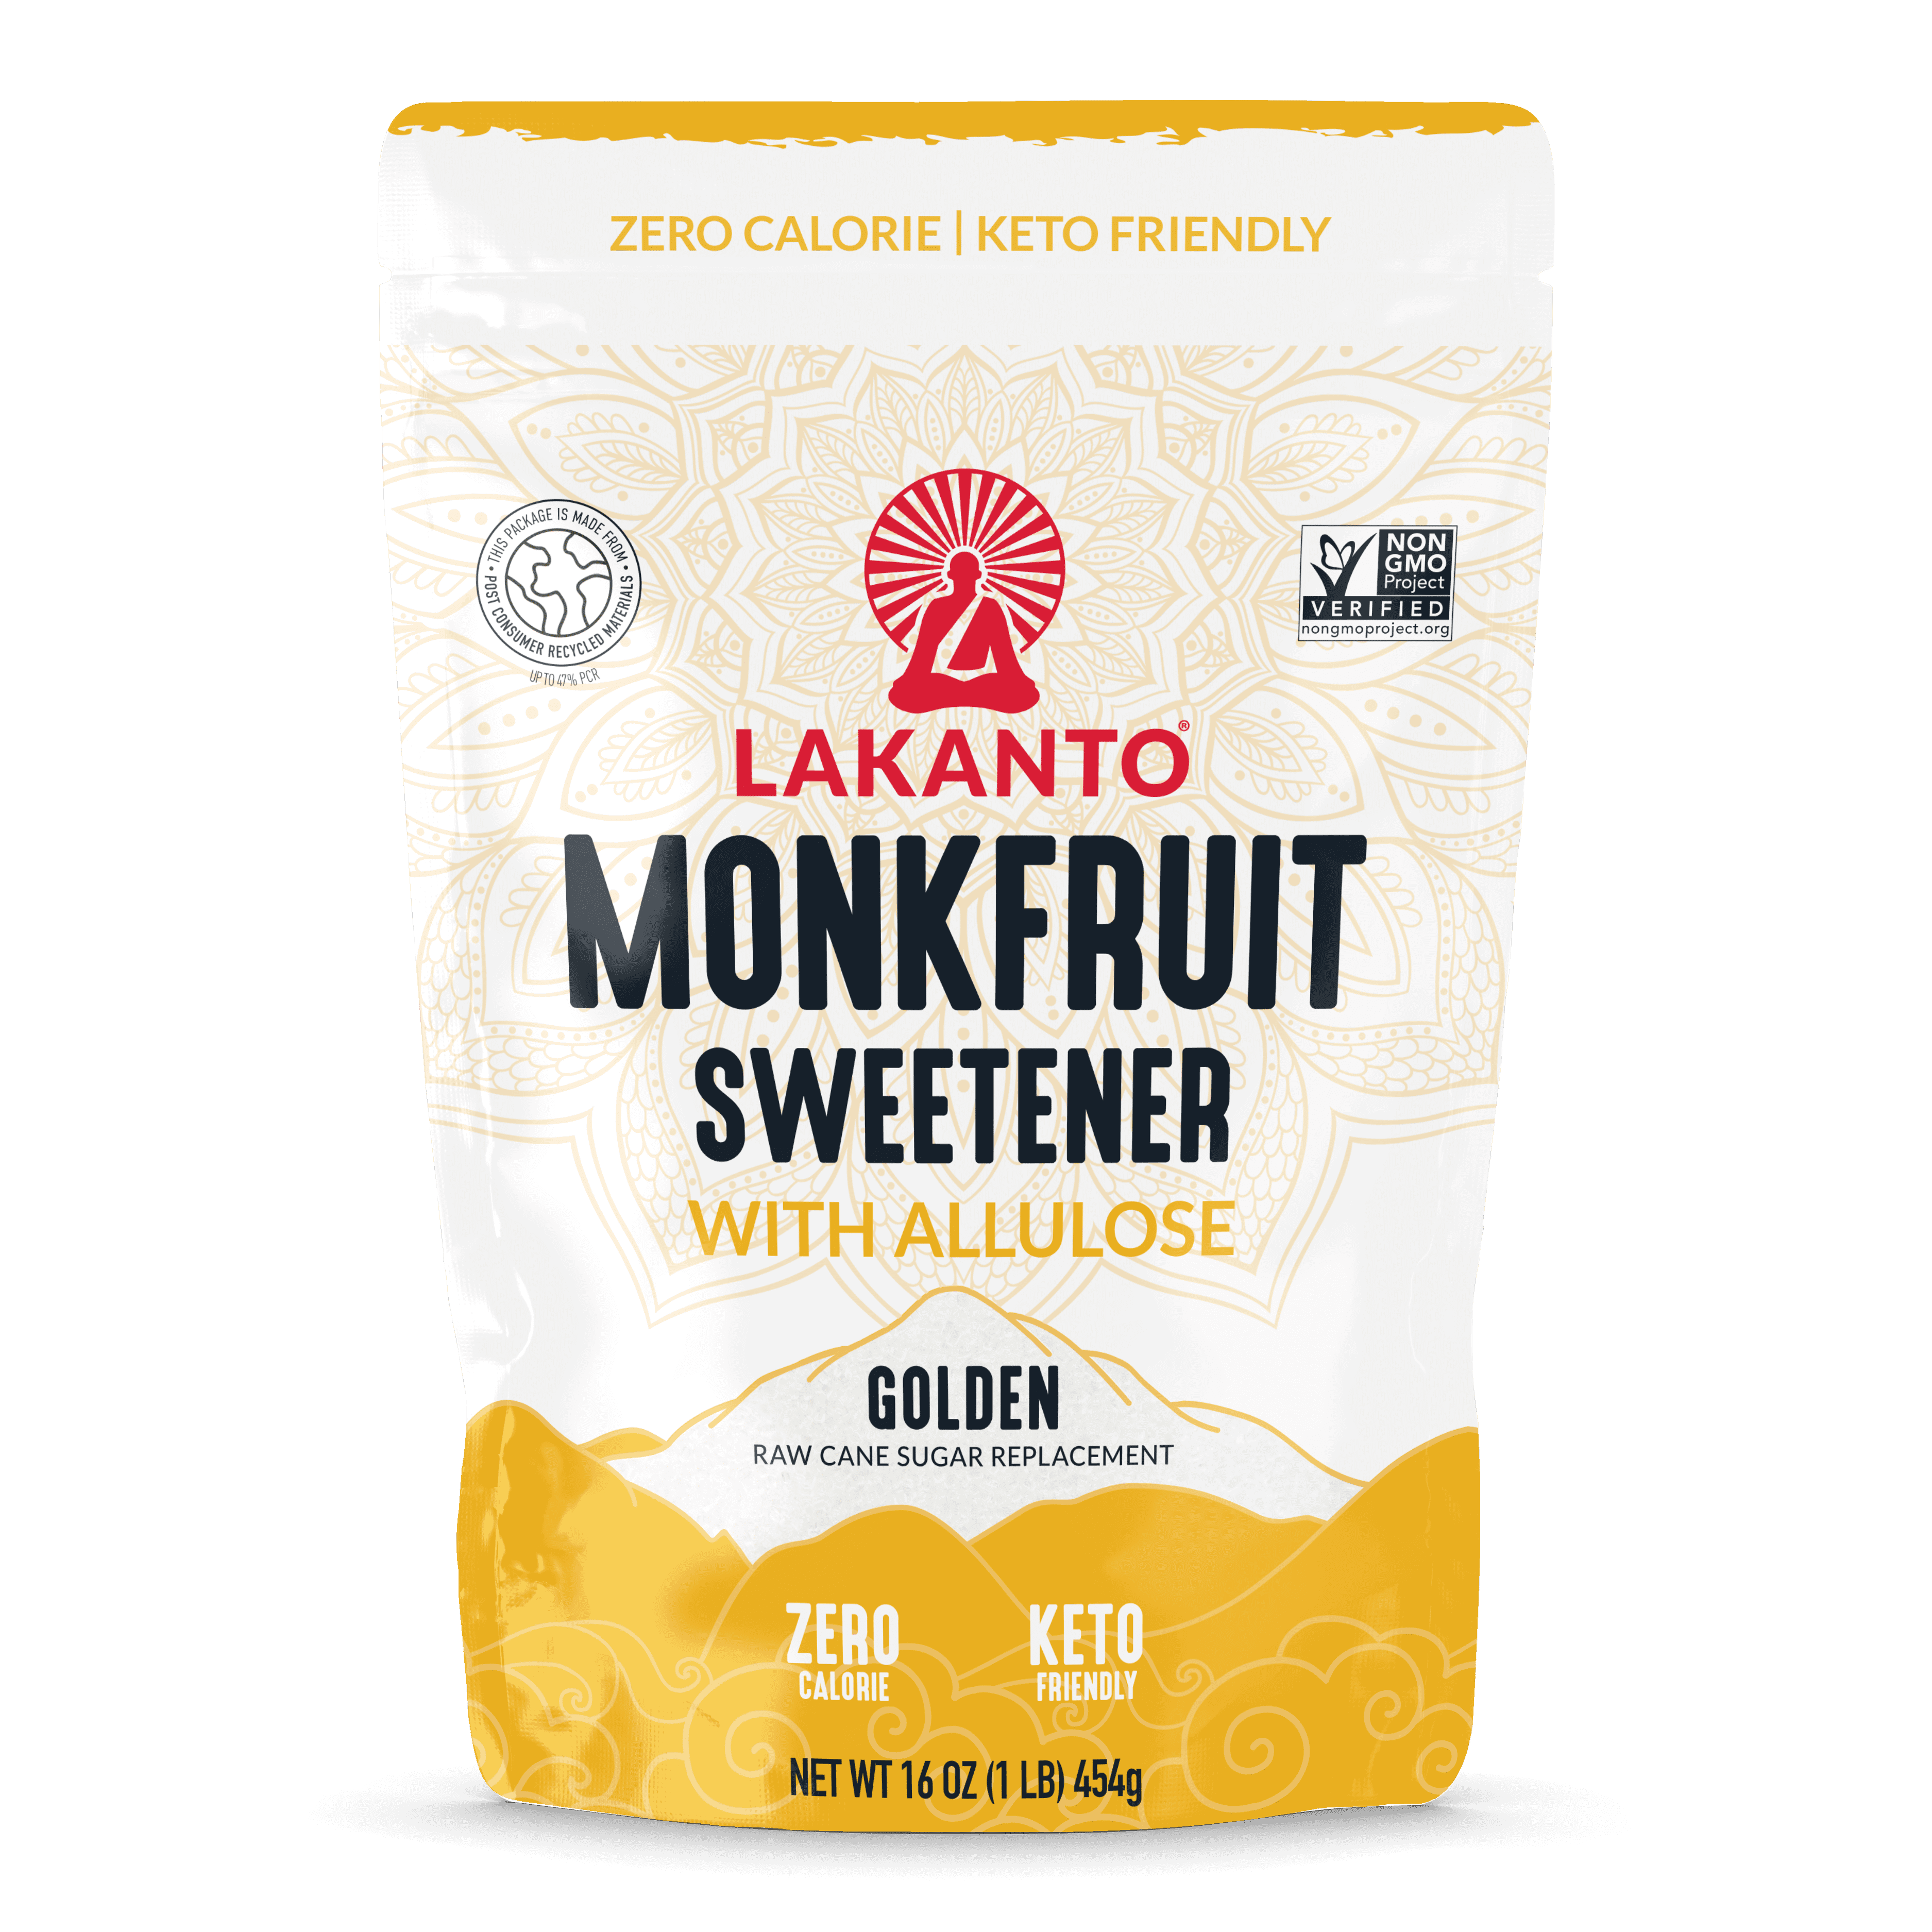 Monk Fruit Classic - All Purpose Sweetener (16oz/Bag) – Natural Mate USA